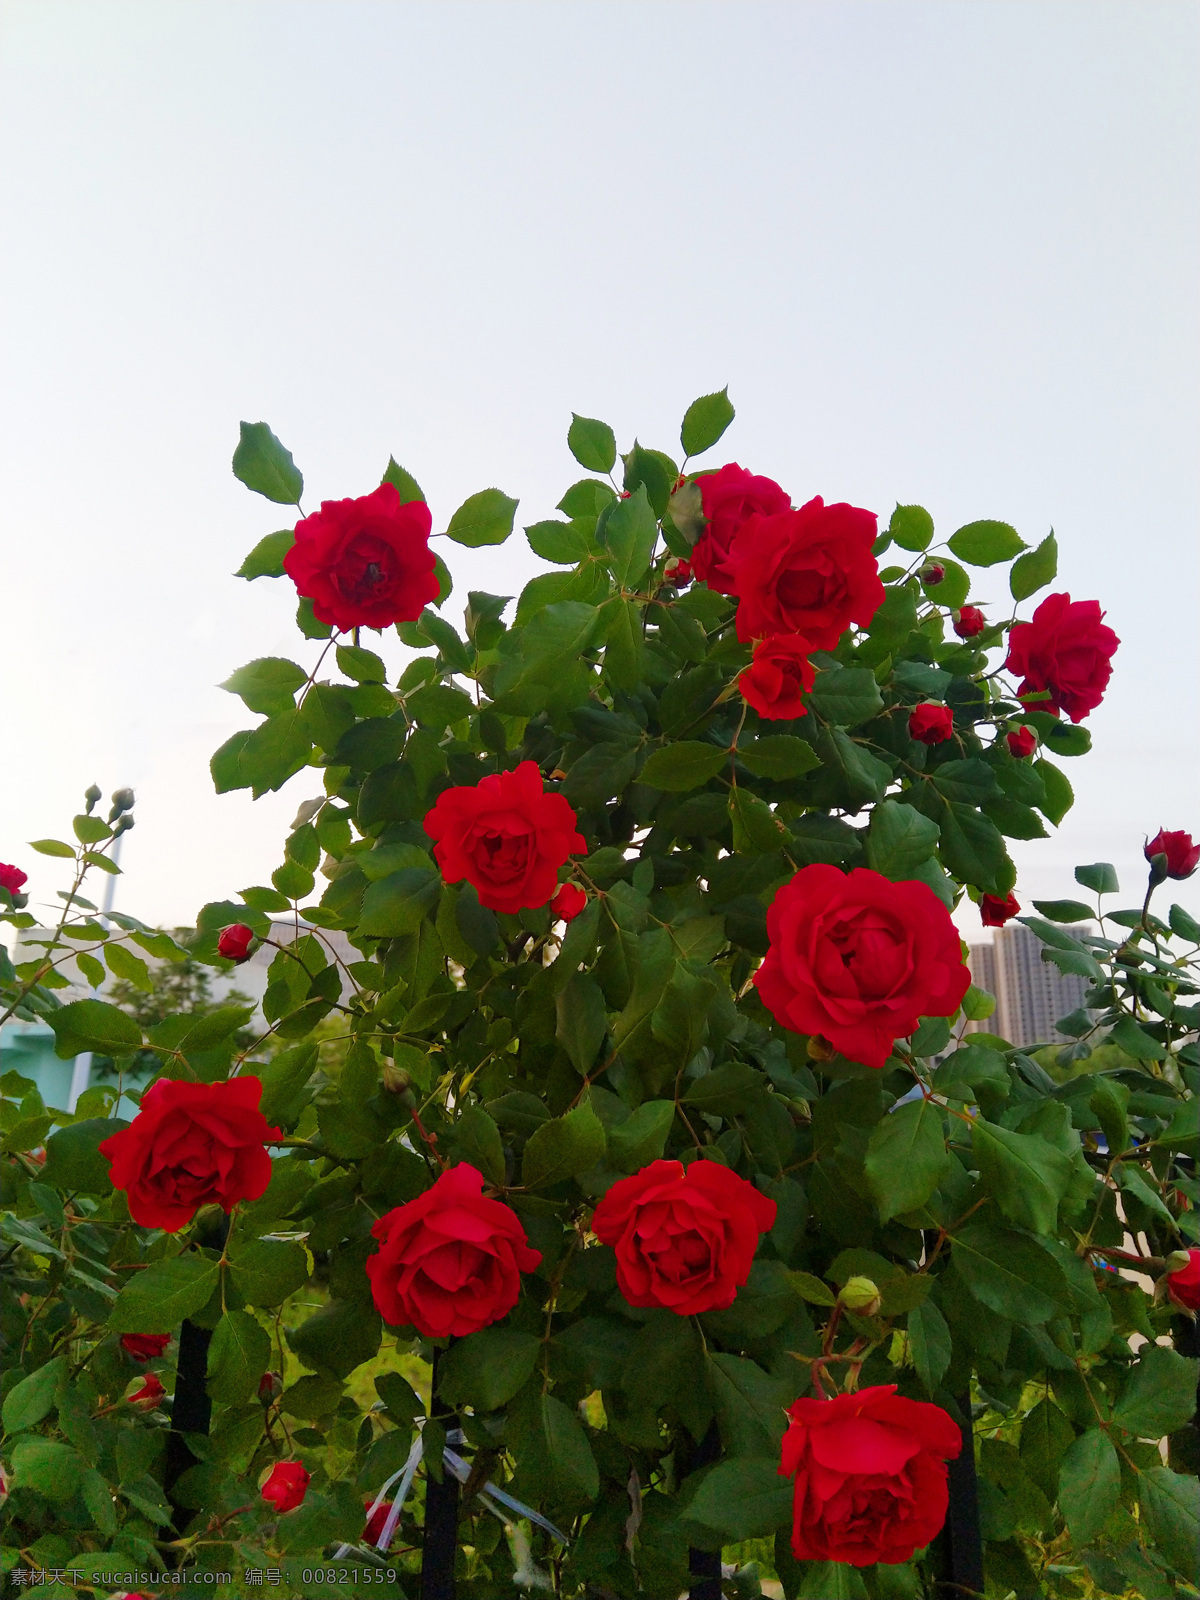 盛开的玫瑰花 盛开 玫瑰花 花卉 茂盛 红色 花朵 绿叶 多娇江山 自然景观 自然风景